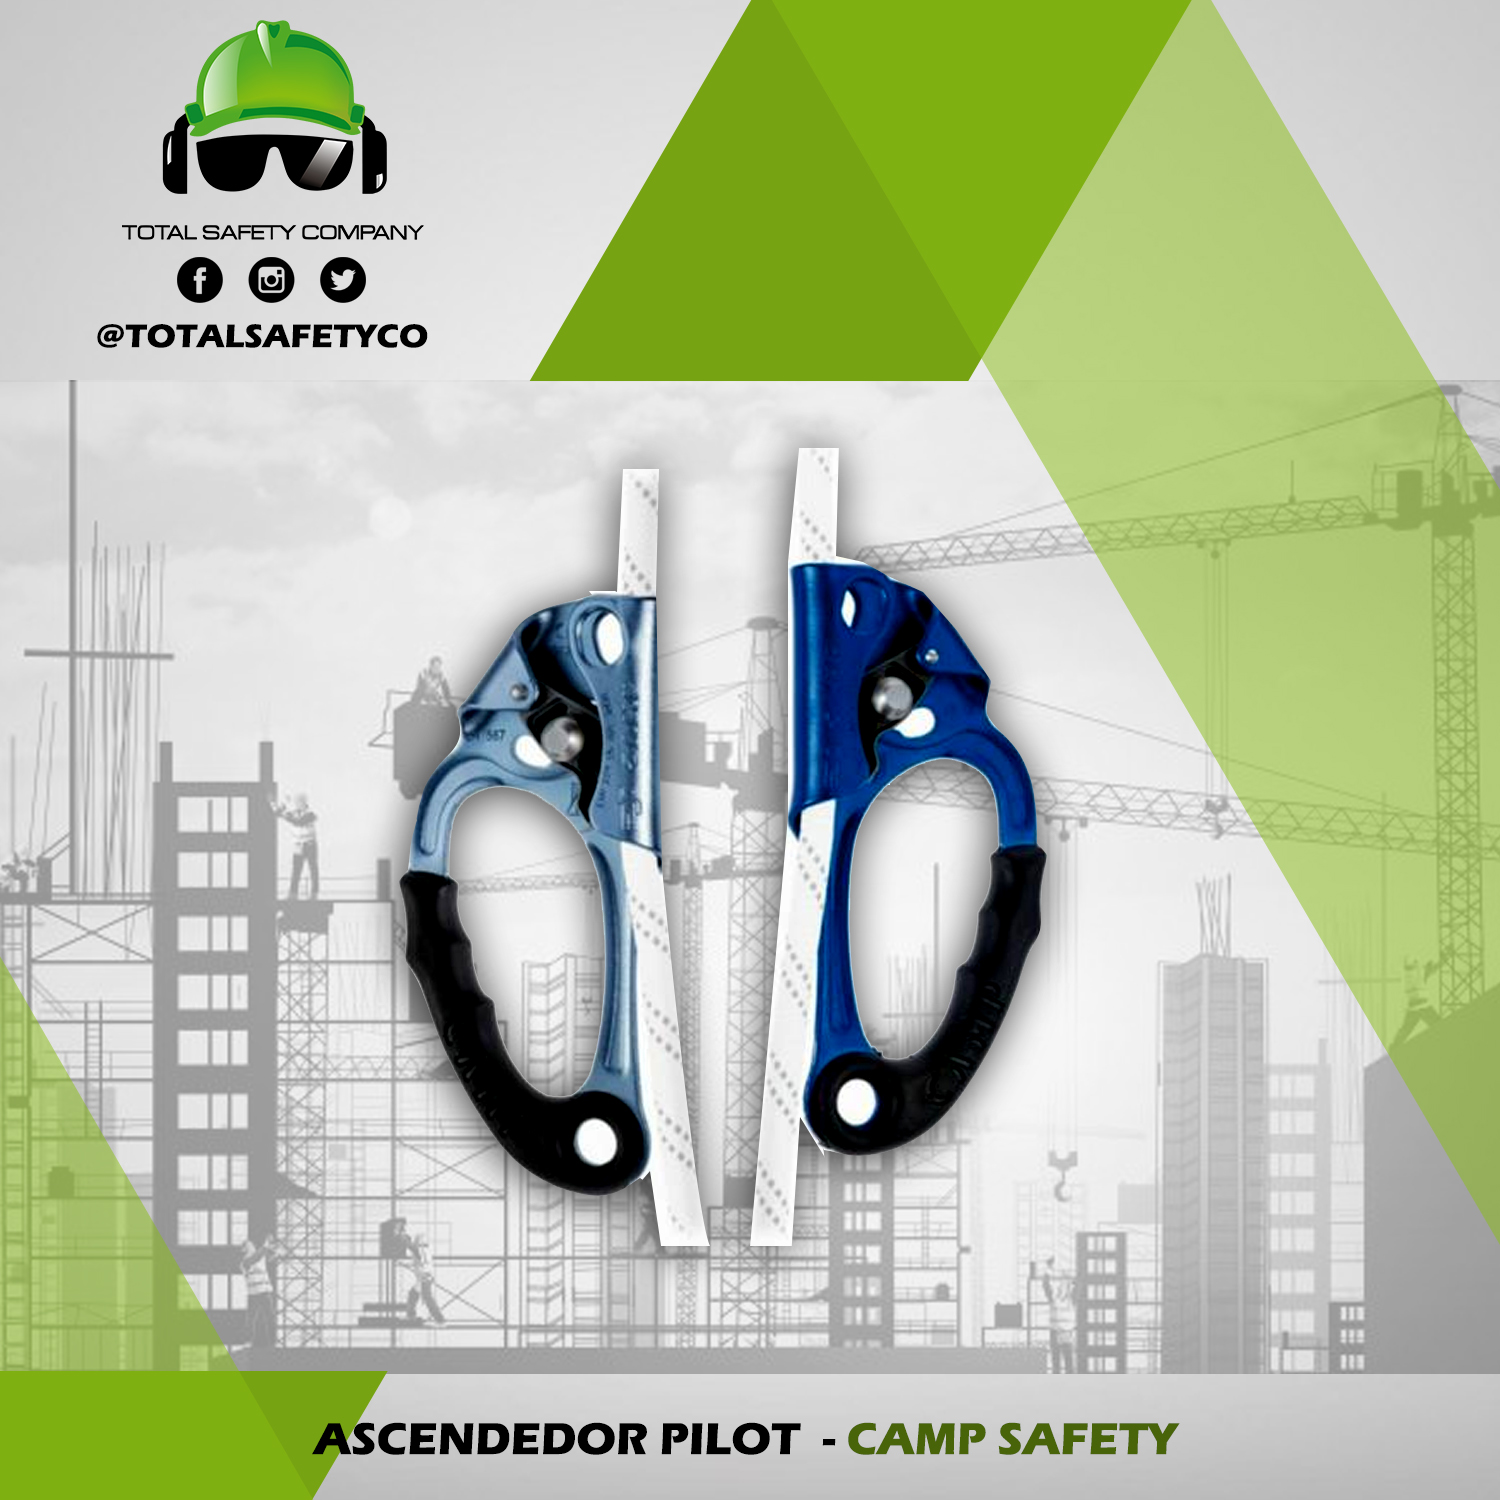 Ascendedor pilot CAMP SAFETY